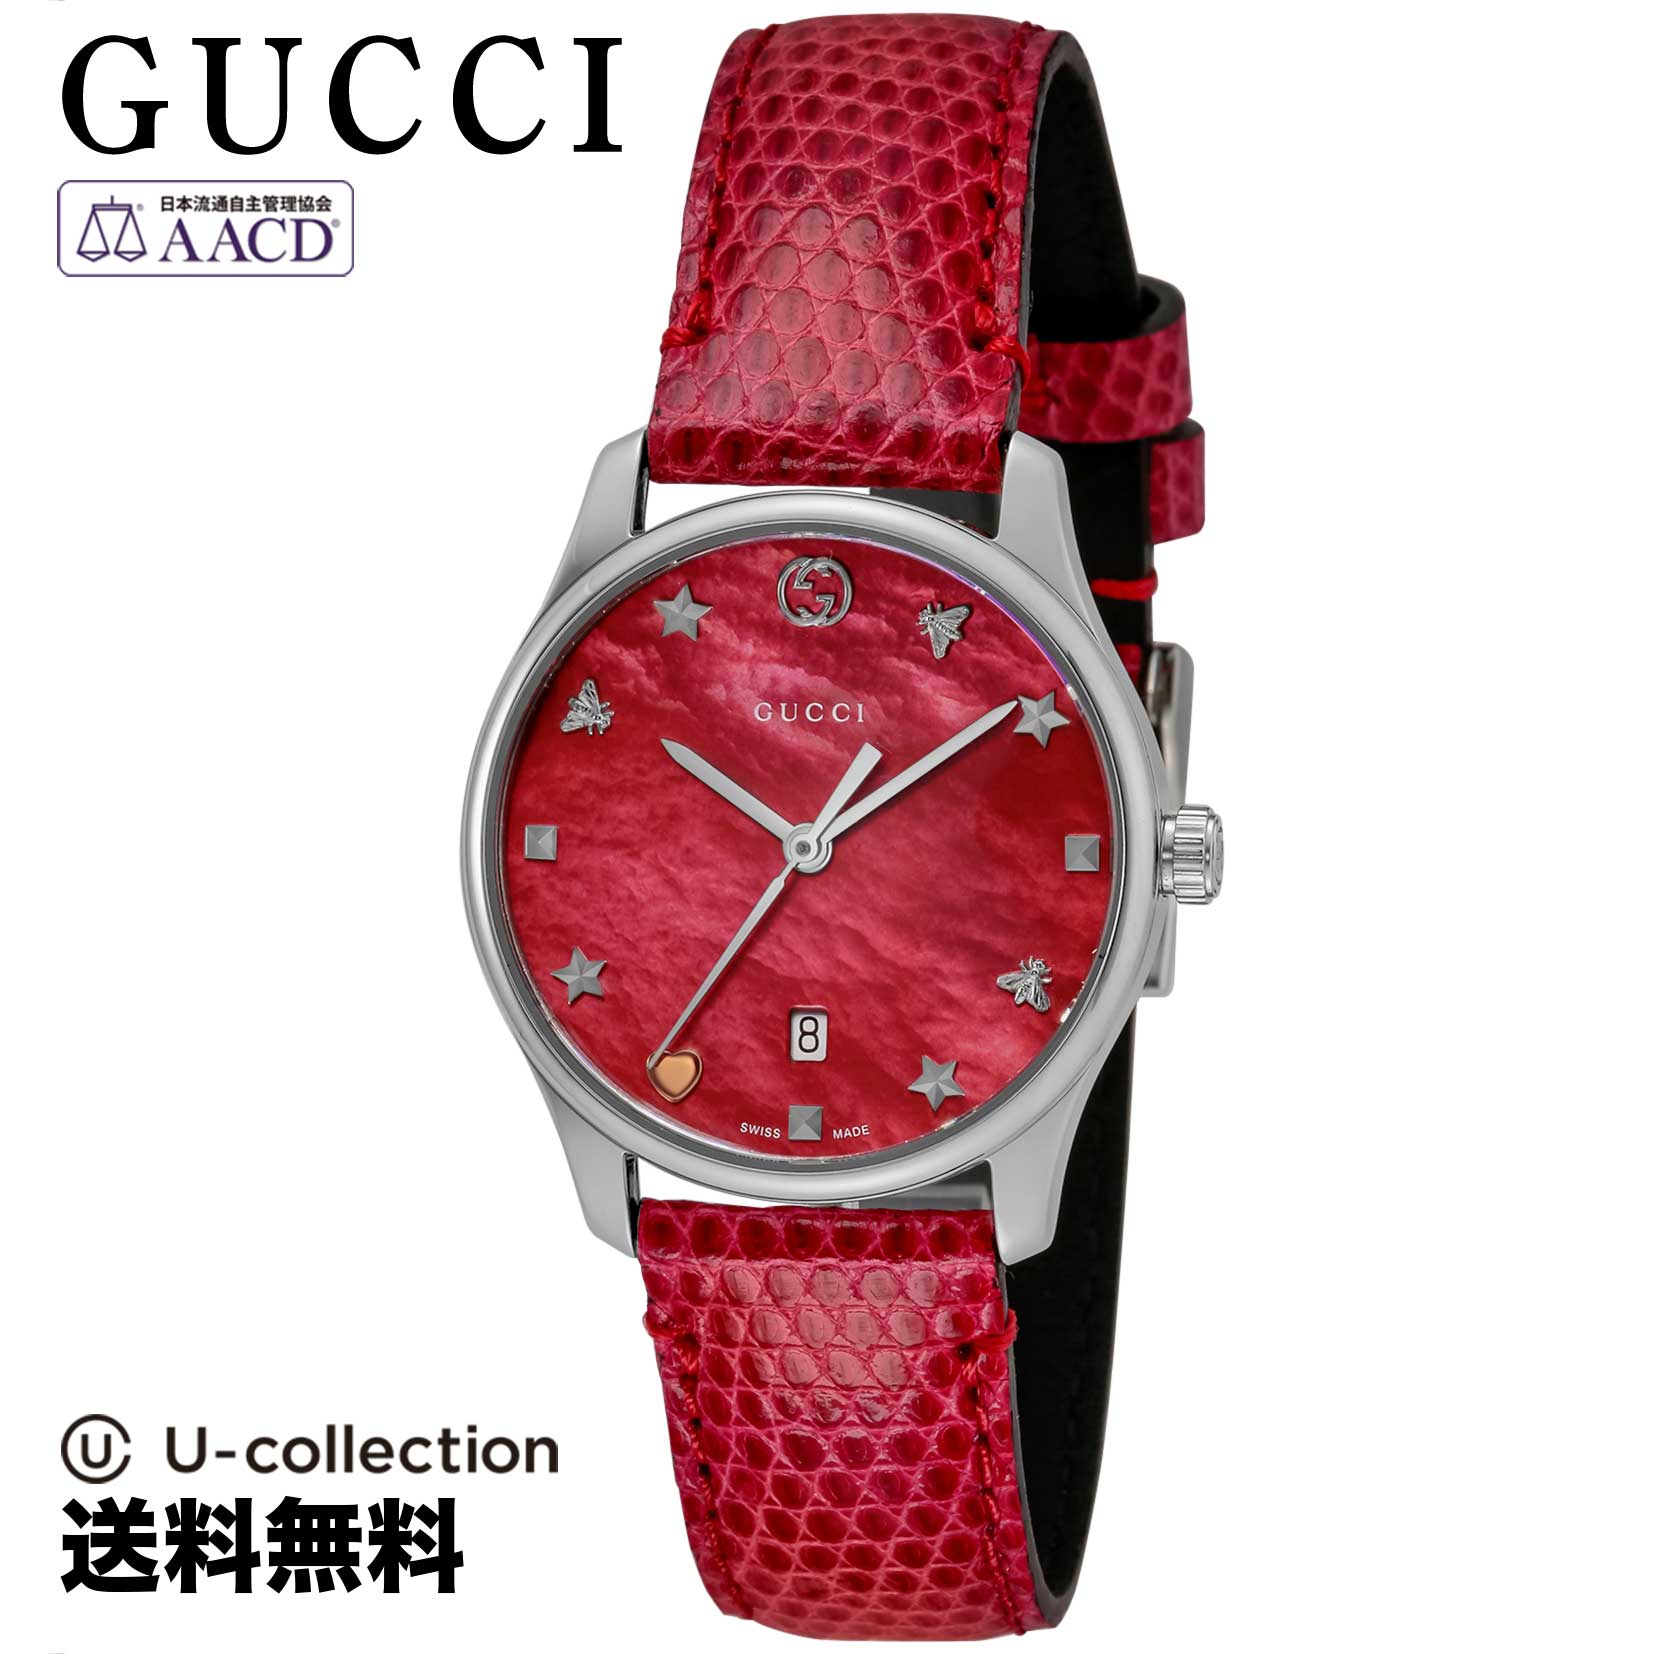 GUCCI【腕時計】 GUCCI(グッチ) G-Timeless / Gタイムレス レディース レッドパール クォーツ YA126584 時計 ブランド